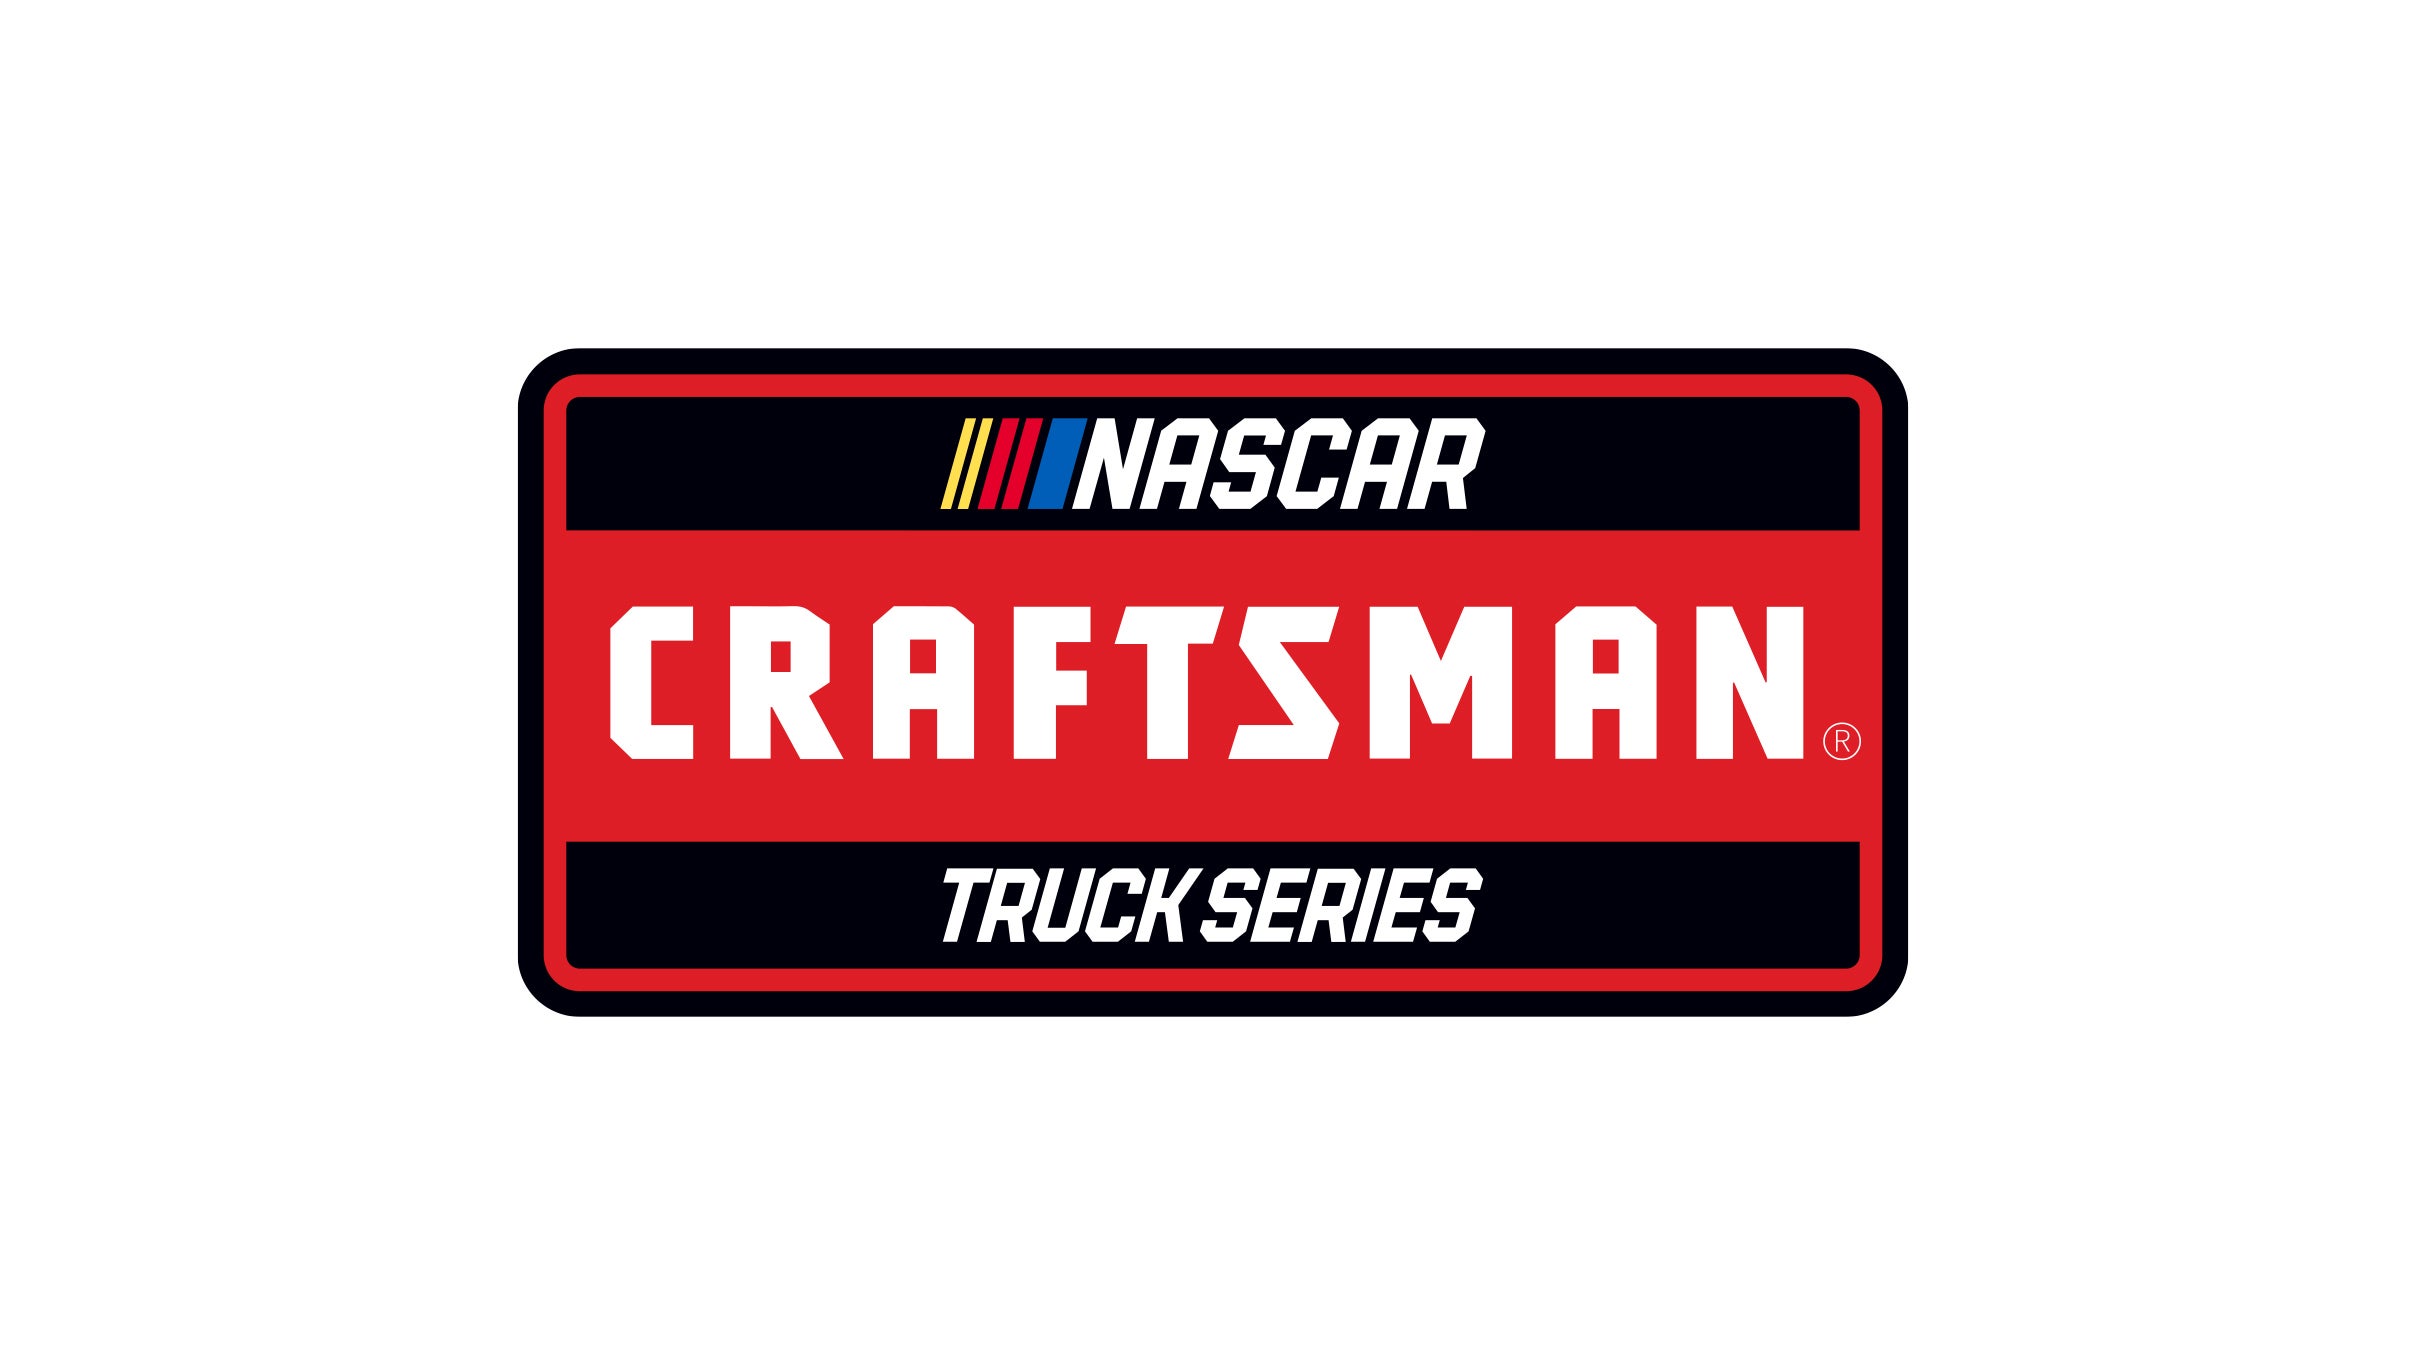 Nascar Craftsman Truck Series at Kansas Speedway